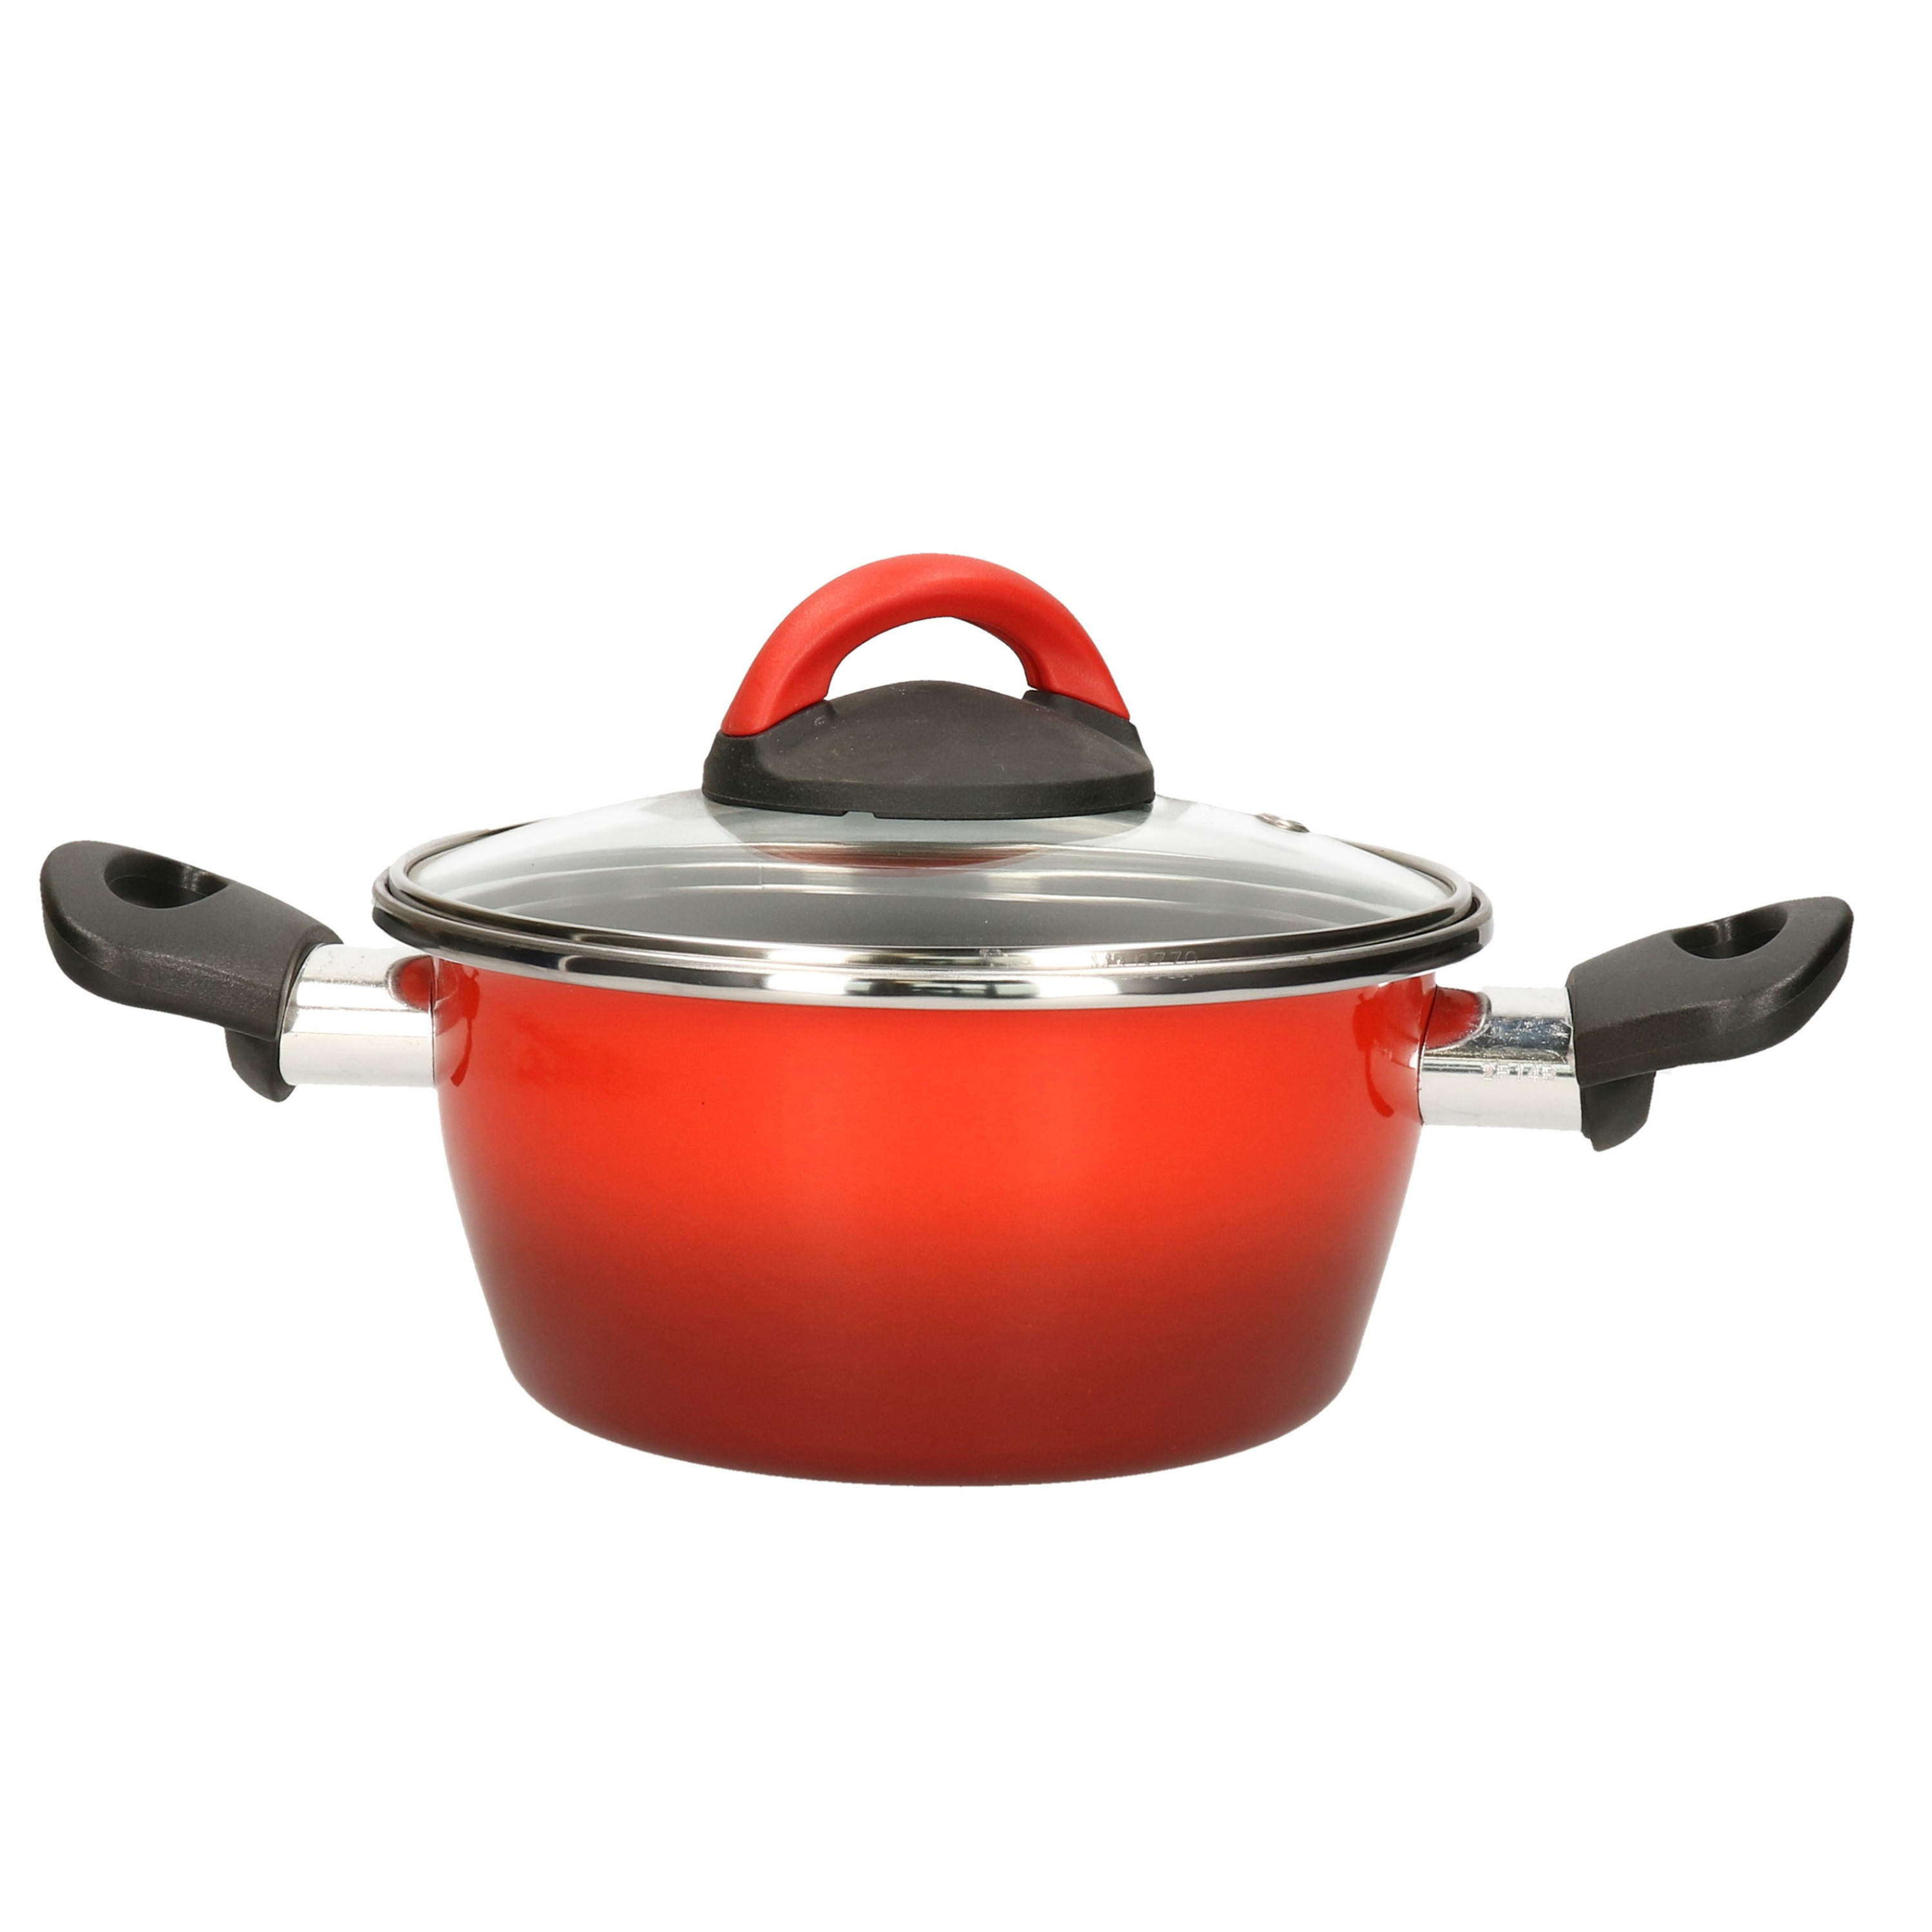 Rvs rode kookpan-pan met glazen deksel 16 cm 1 liter